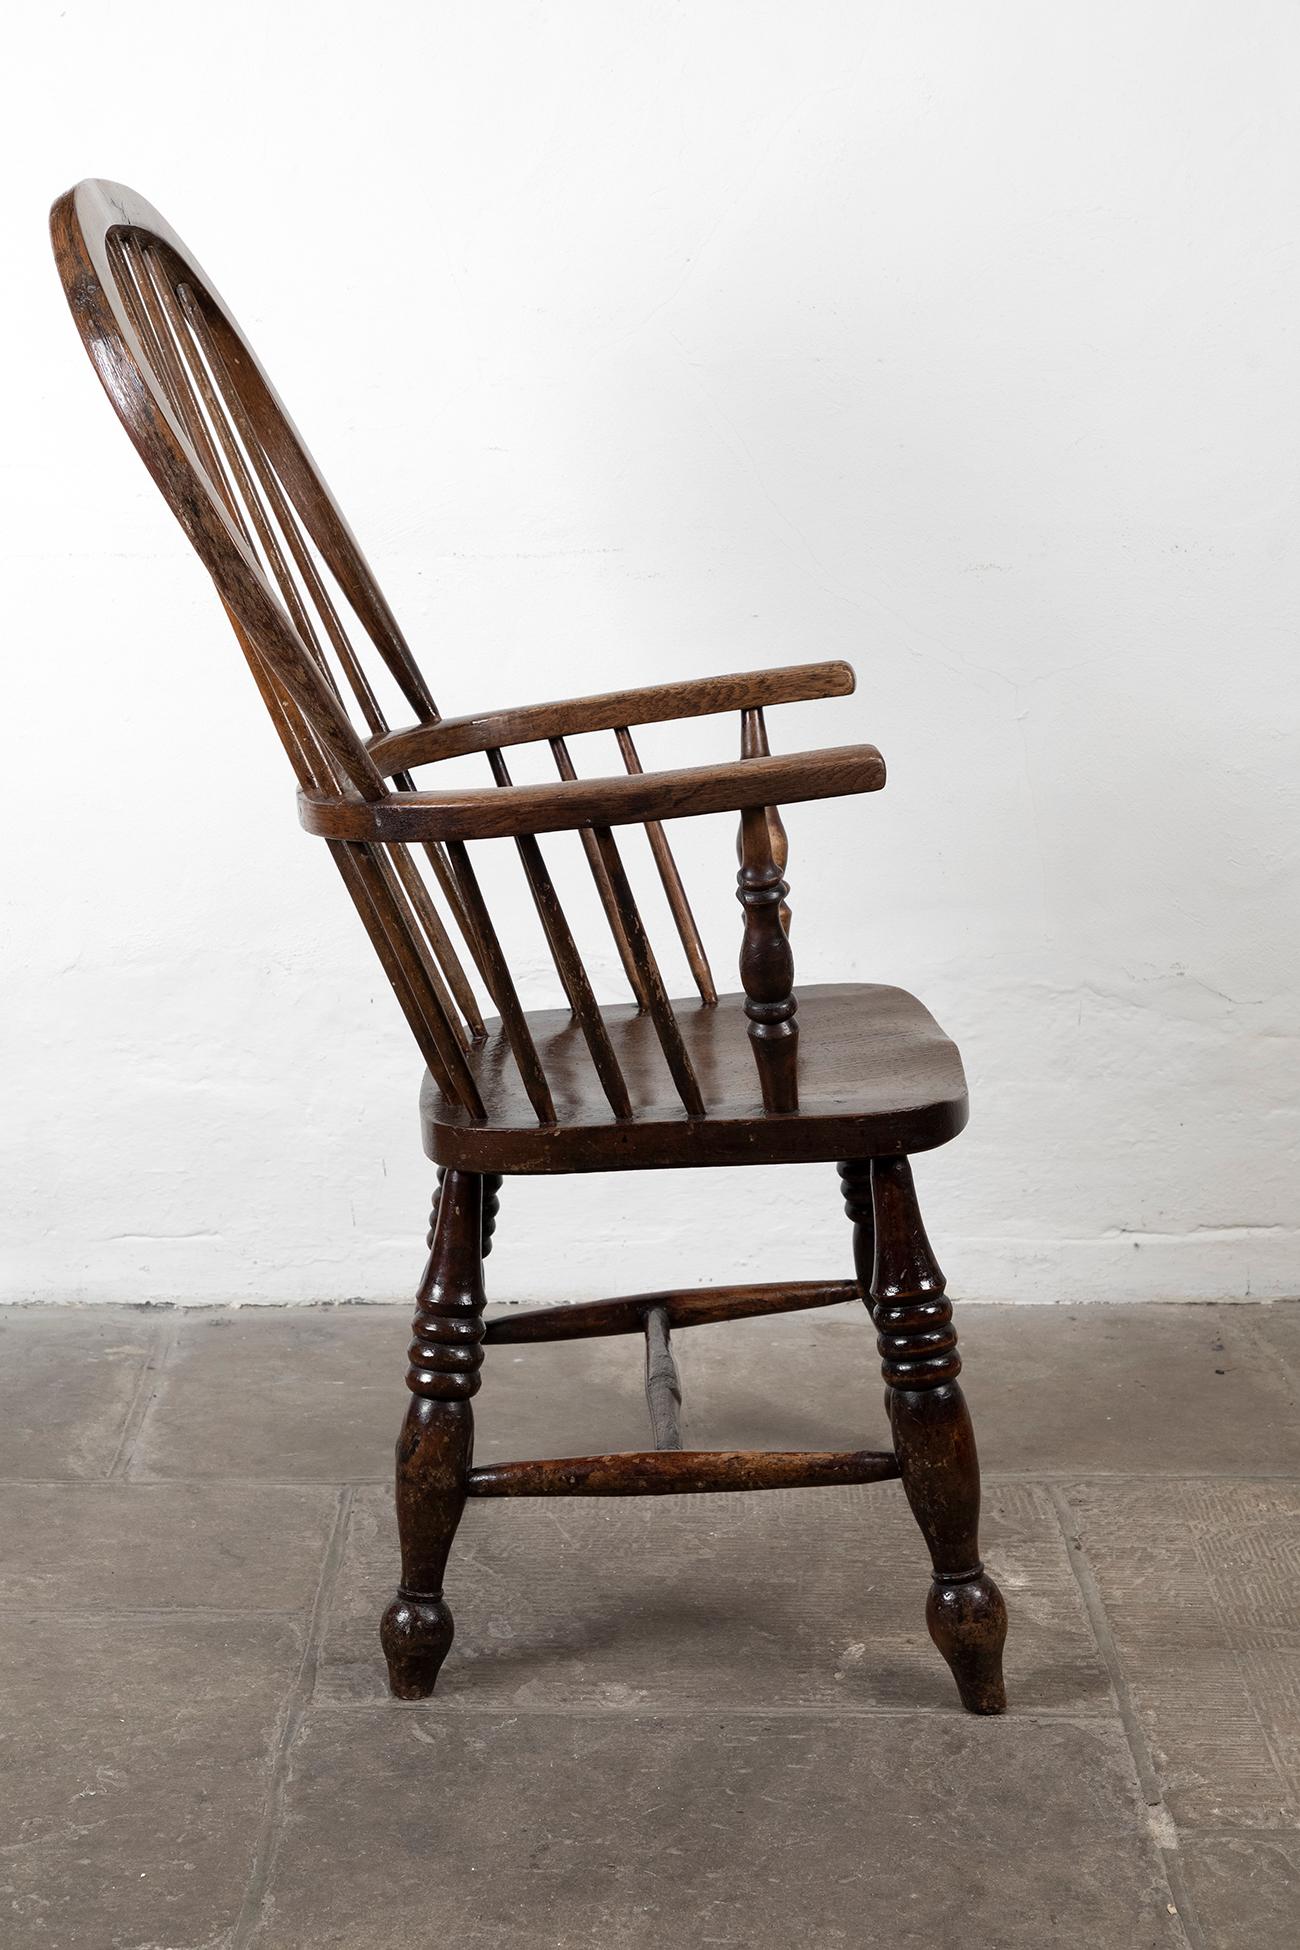 Merveilleux fauteuil Windsor britannique du XIXe siècle à dossier arrondi en orme et en frêne. Avec des restes de peinture d'origine sur les accoudoirs et le dossier, c'est une pièce étonnante.

Vers 1860

Informations supplémentaires :
H 117